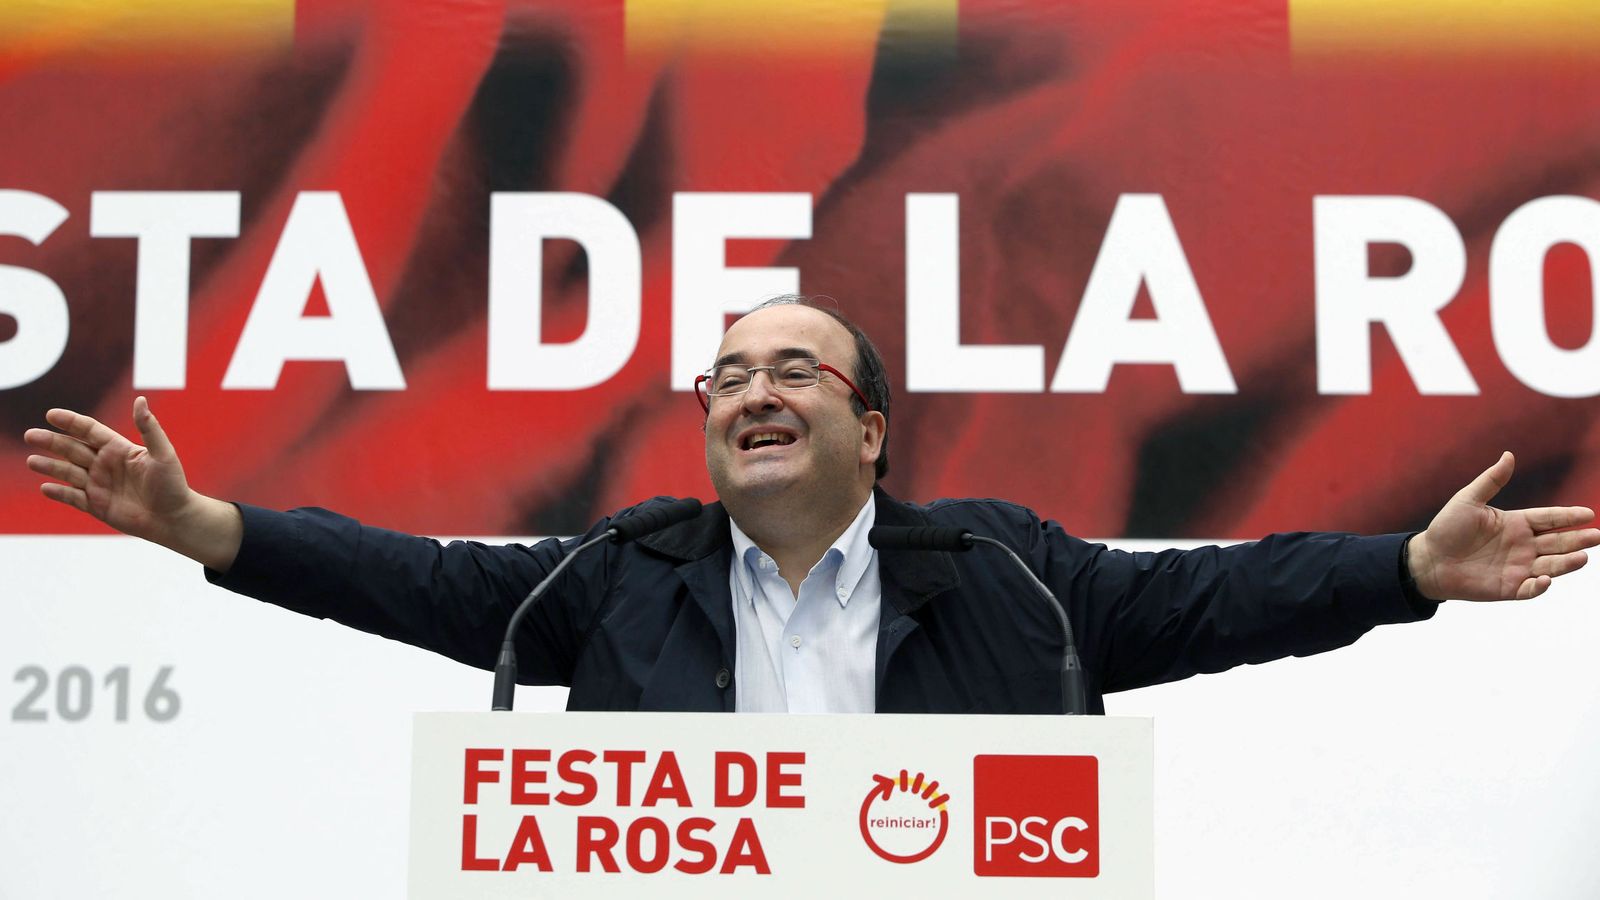 Foto: Miquel Iceta, primer secretario del PSC, durante su intervención en la Festa de la Rosa, este 24 de septiembre en Gavà, Barcelona. (EFE)